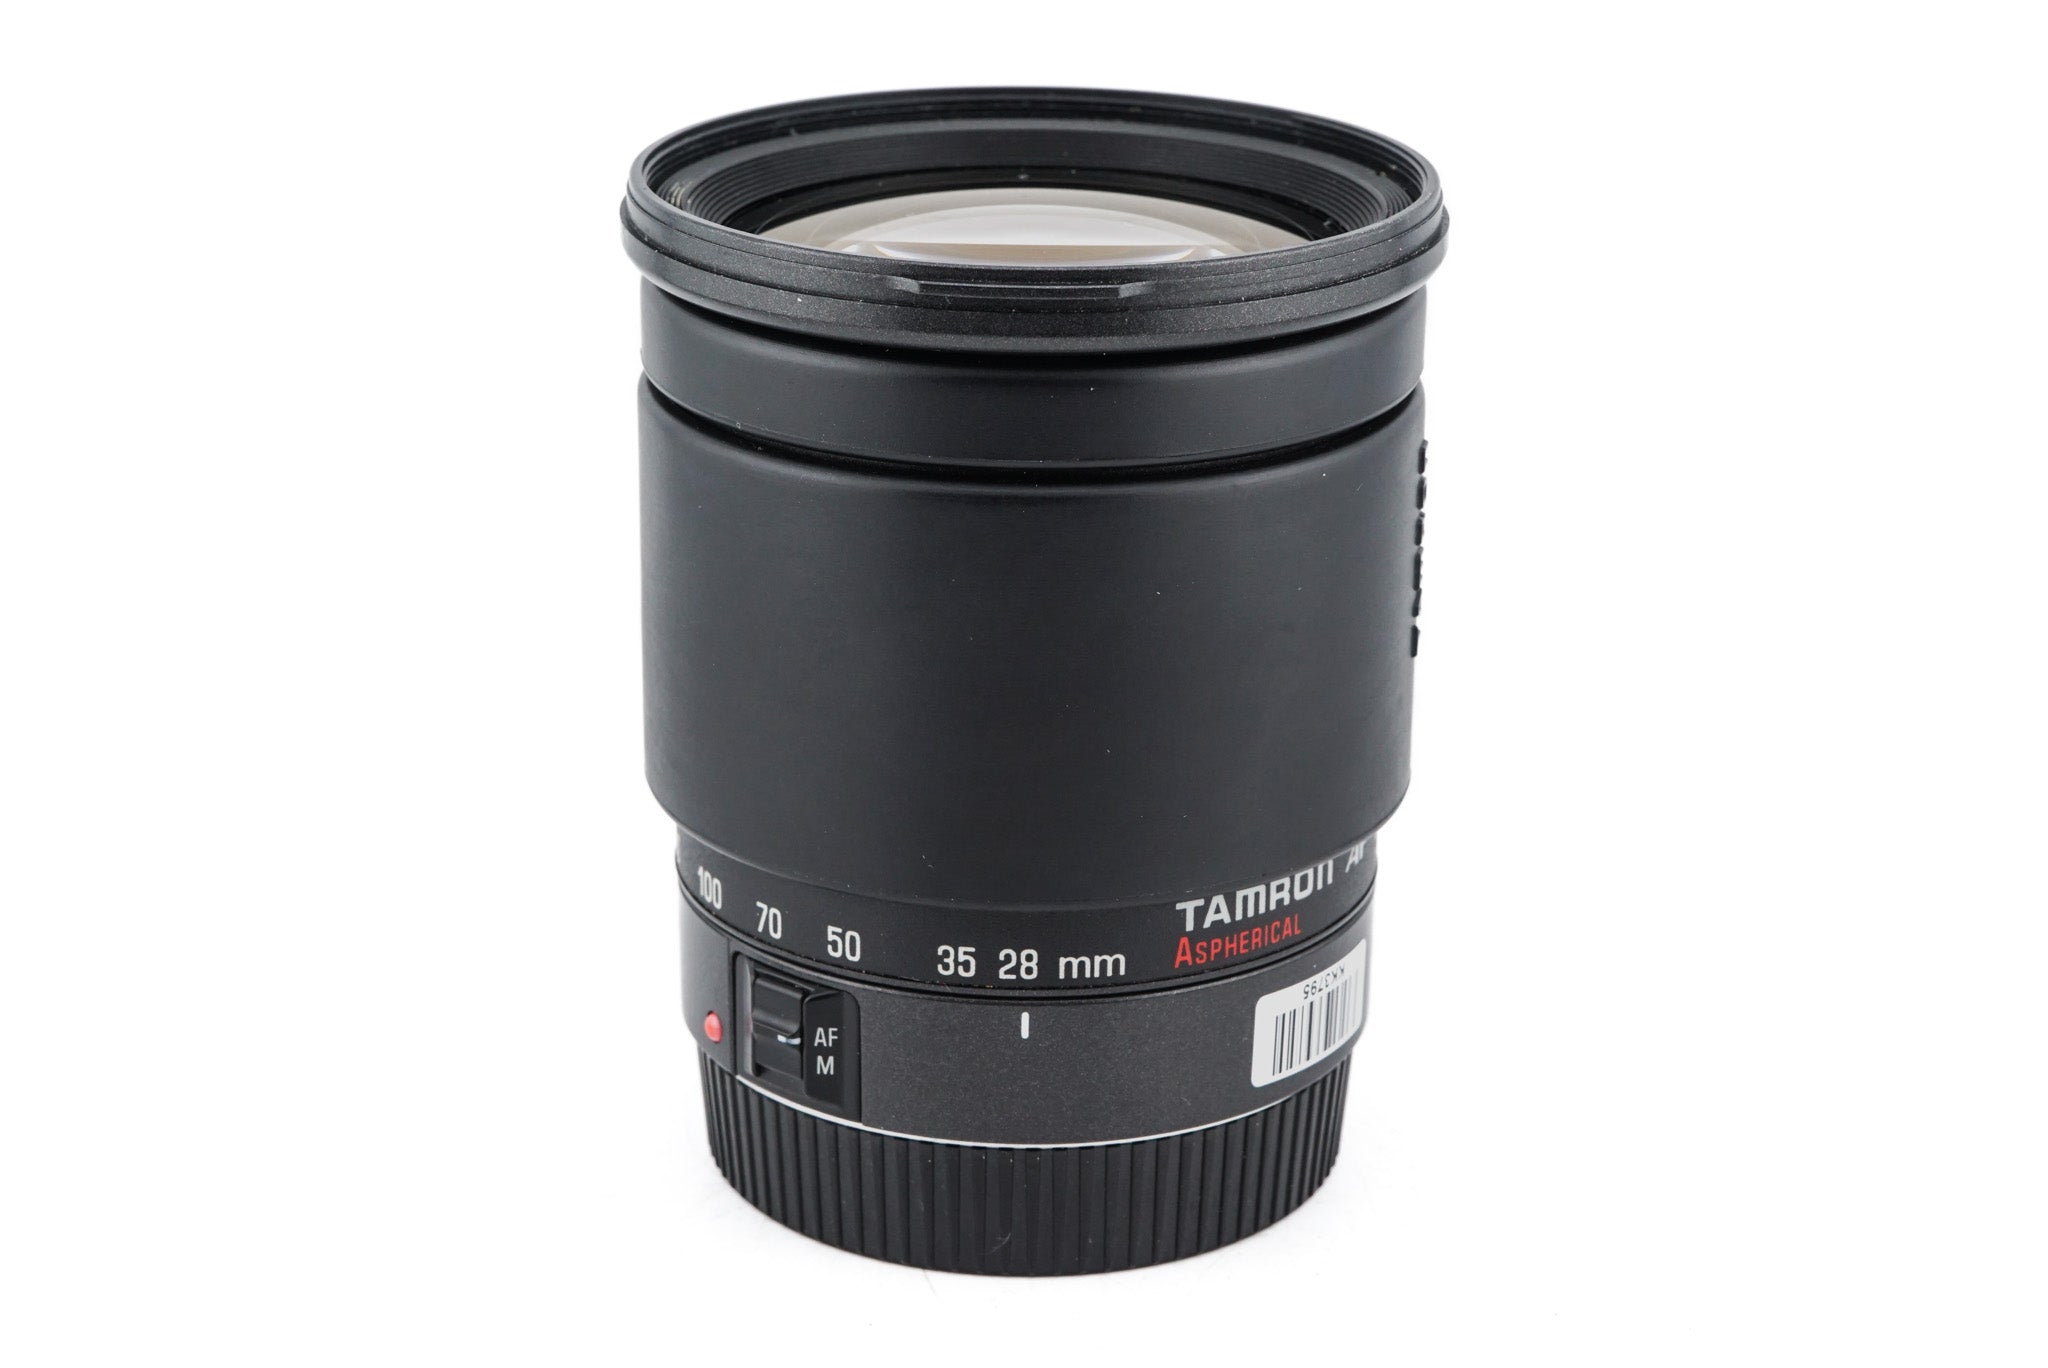 Tamron 28-200mm f3.8-5.6 AF Aspherical (71DE) - Lens